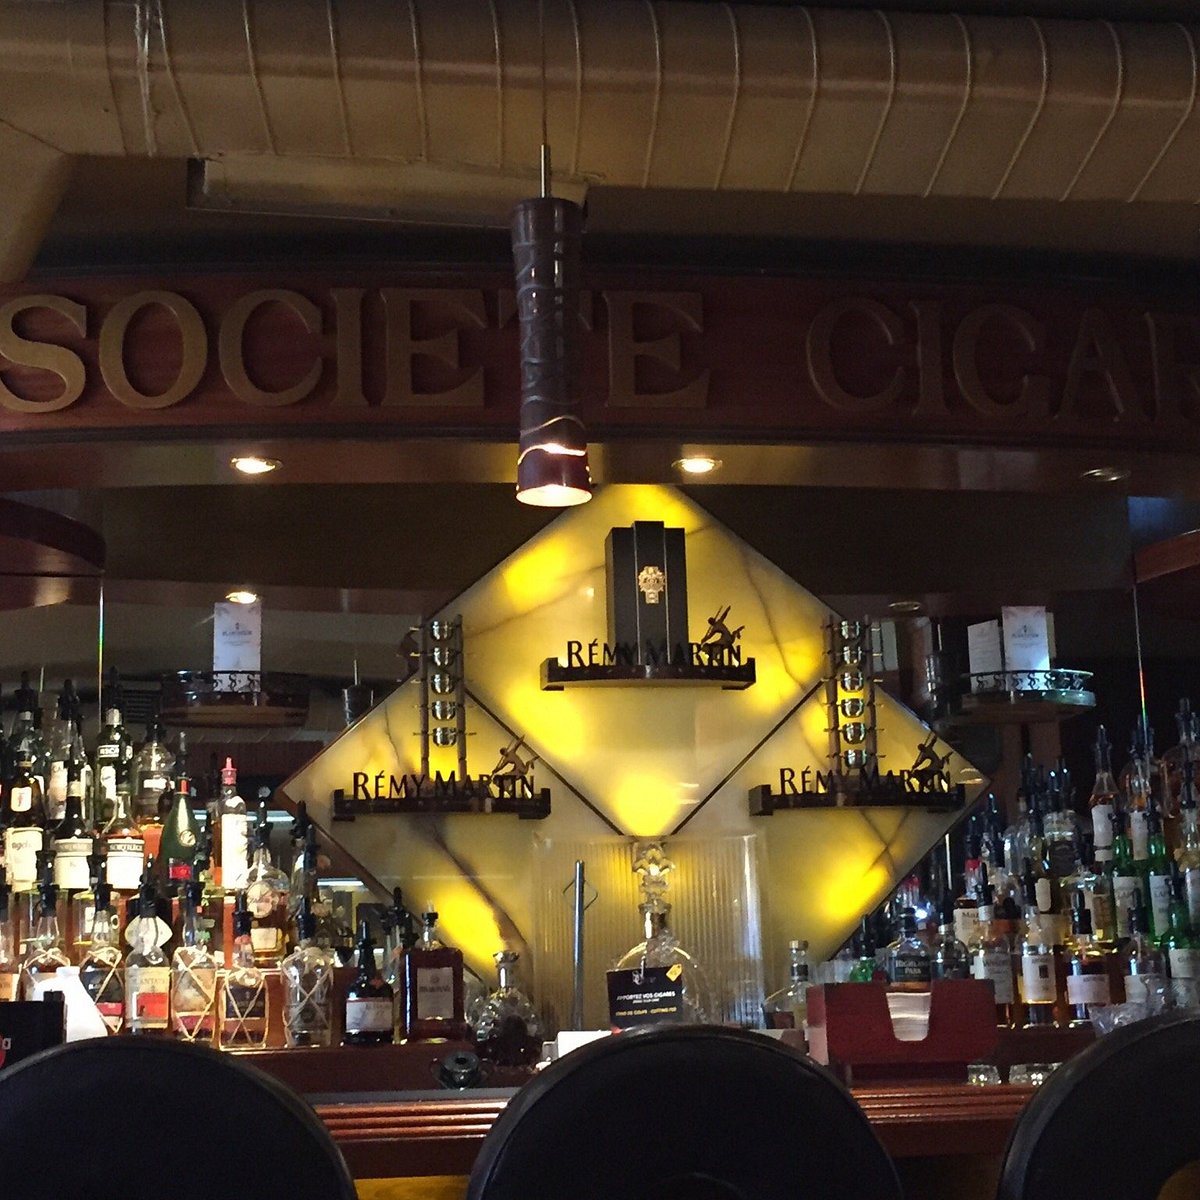 Société Cigare Bar, Квебек: лучшие советы перед посещением - Tripadvisor.